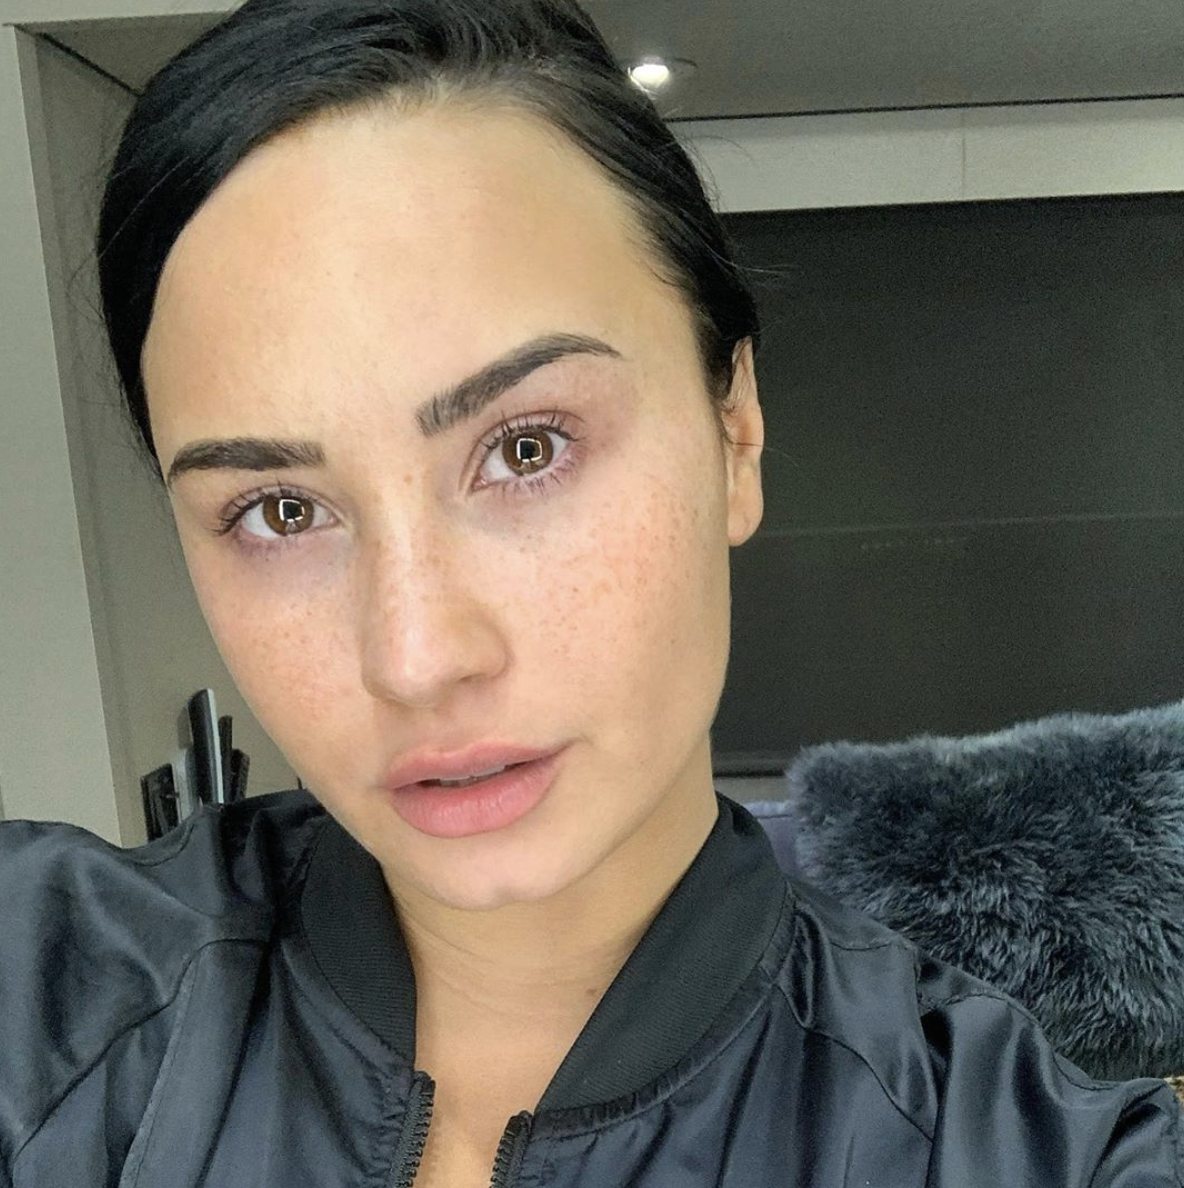 Ulejlighed Sporvogn Rose Demi Lovato Posts Rare Makeup-Free Selfie on Instagram